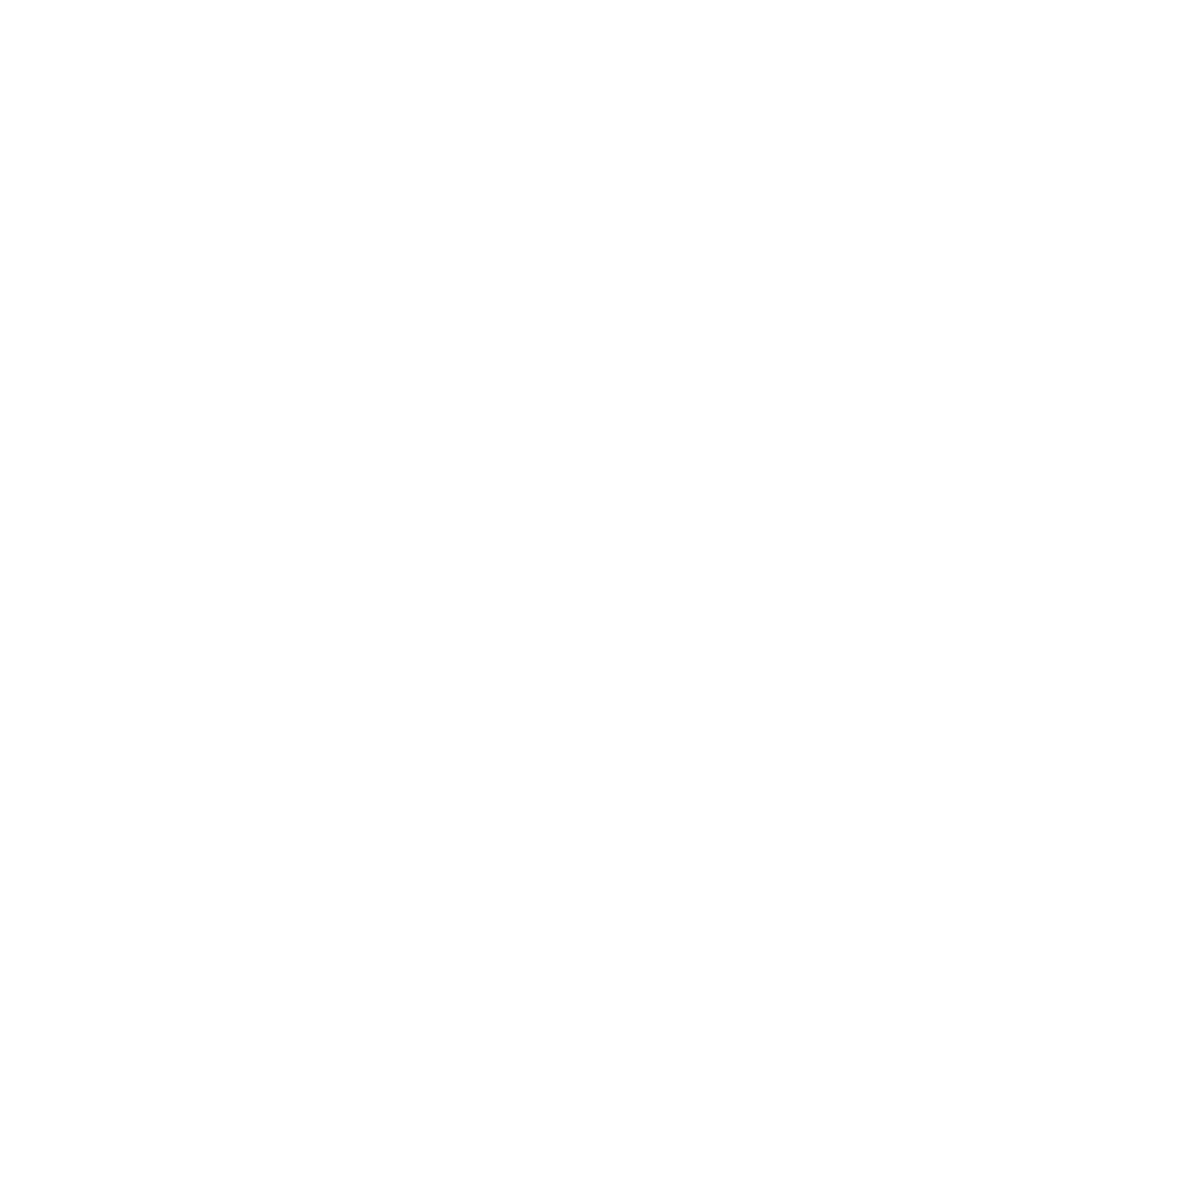 Alex Nesic